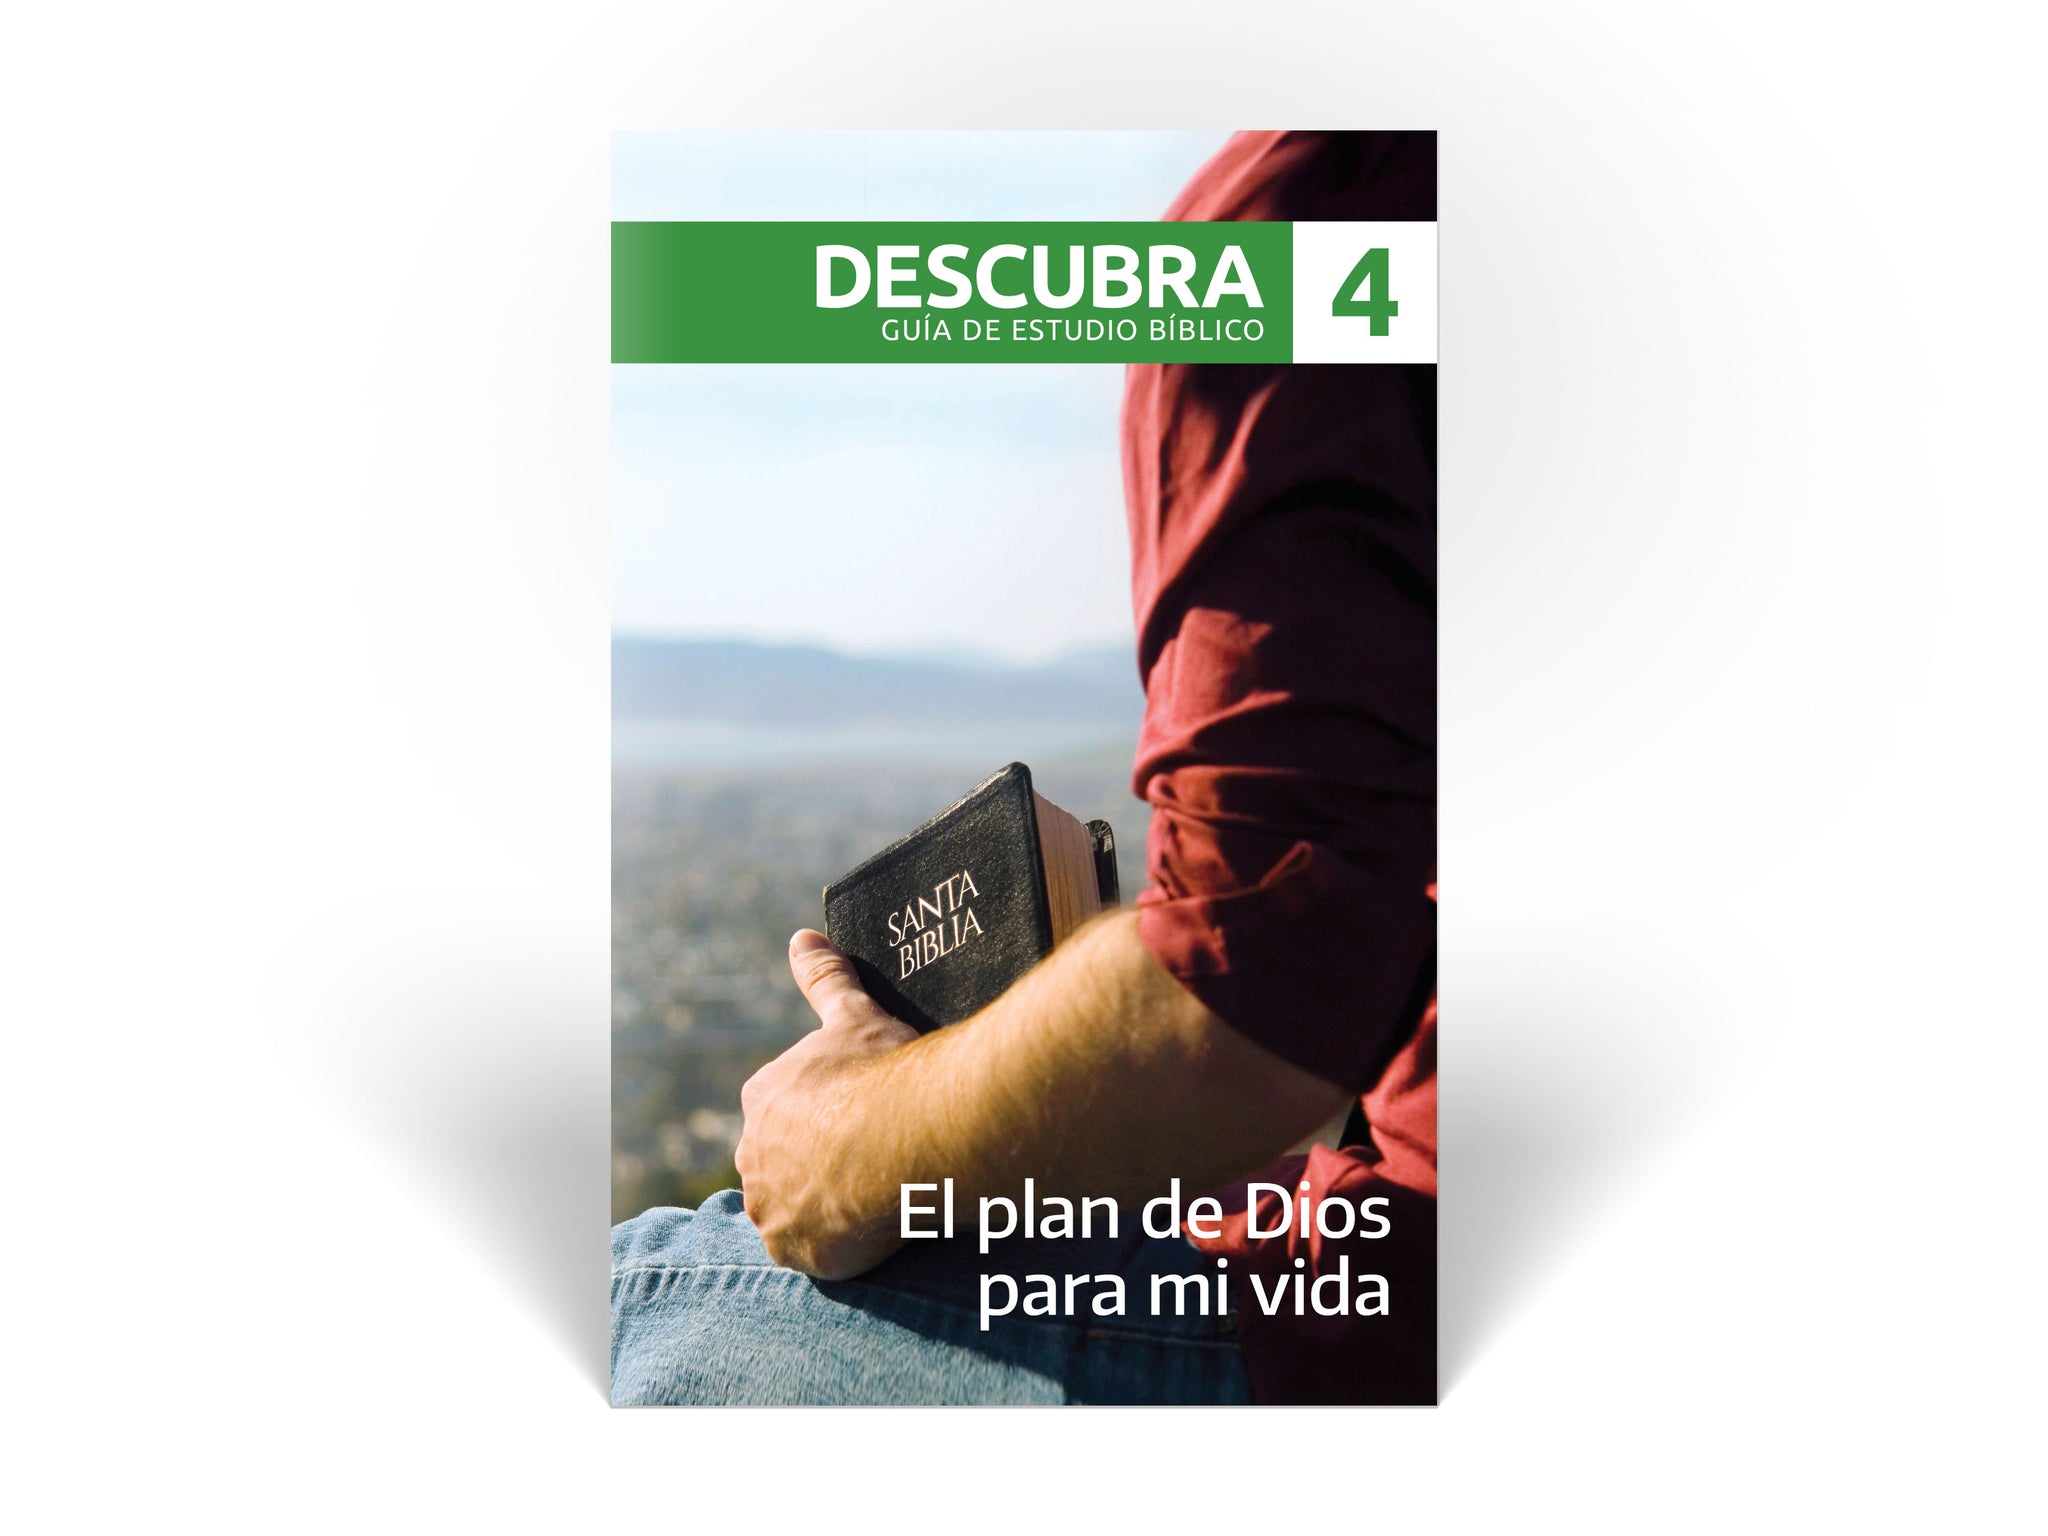 Descubra Guide #4 - El plan de Dios para mi vida